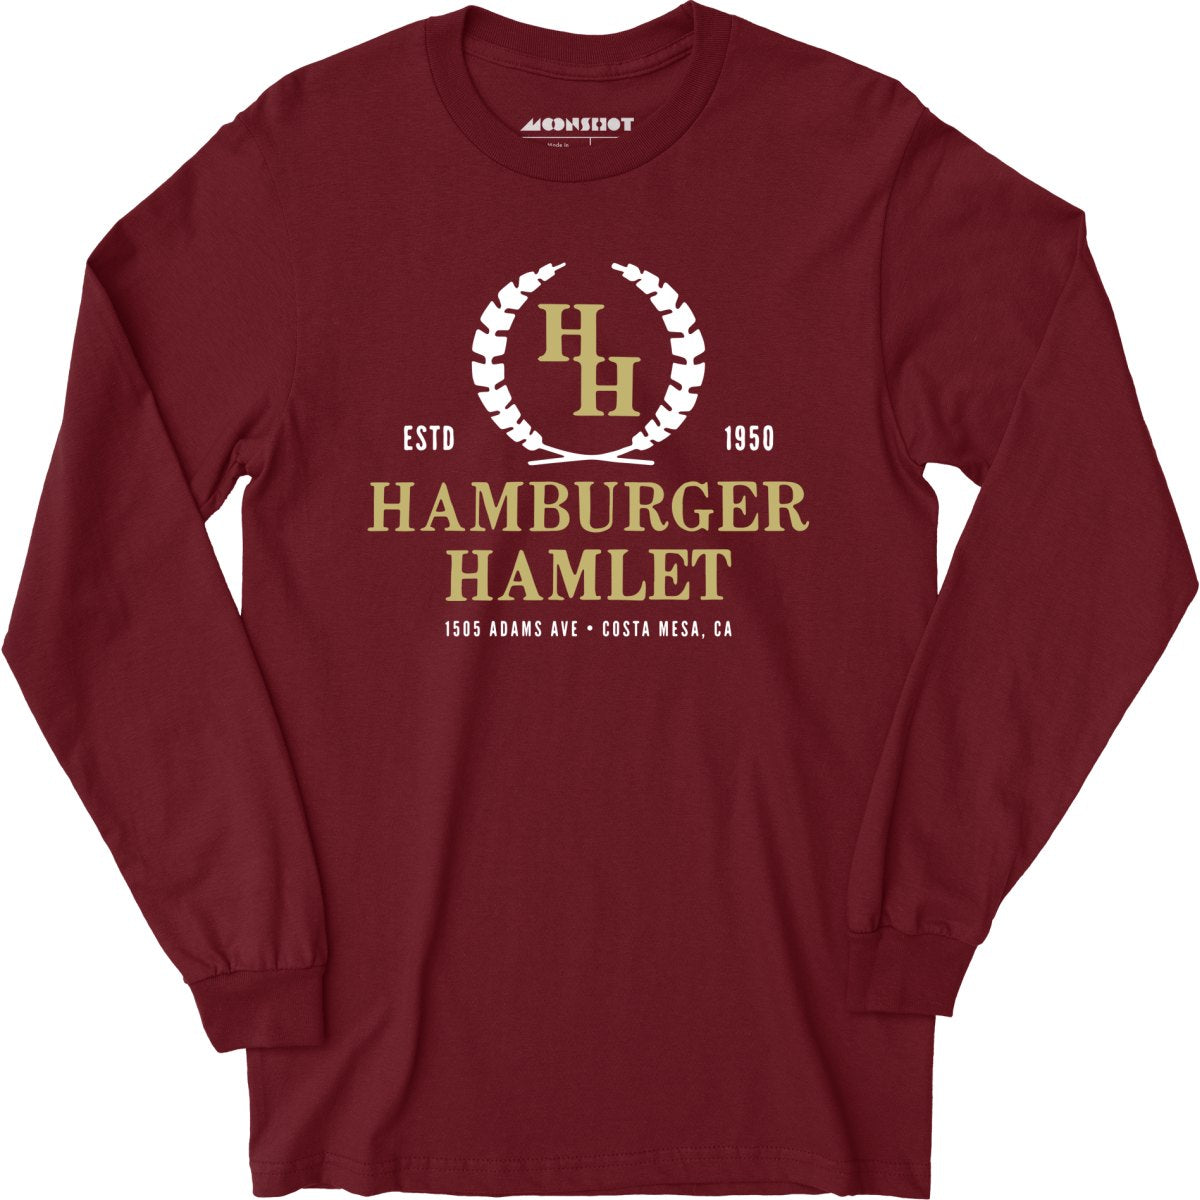 Hamburger Hamlet - Costa Mesa, CA - Vintage Restaurant - Long Sleeve T-Shirt